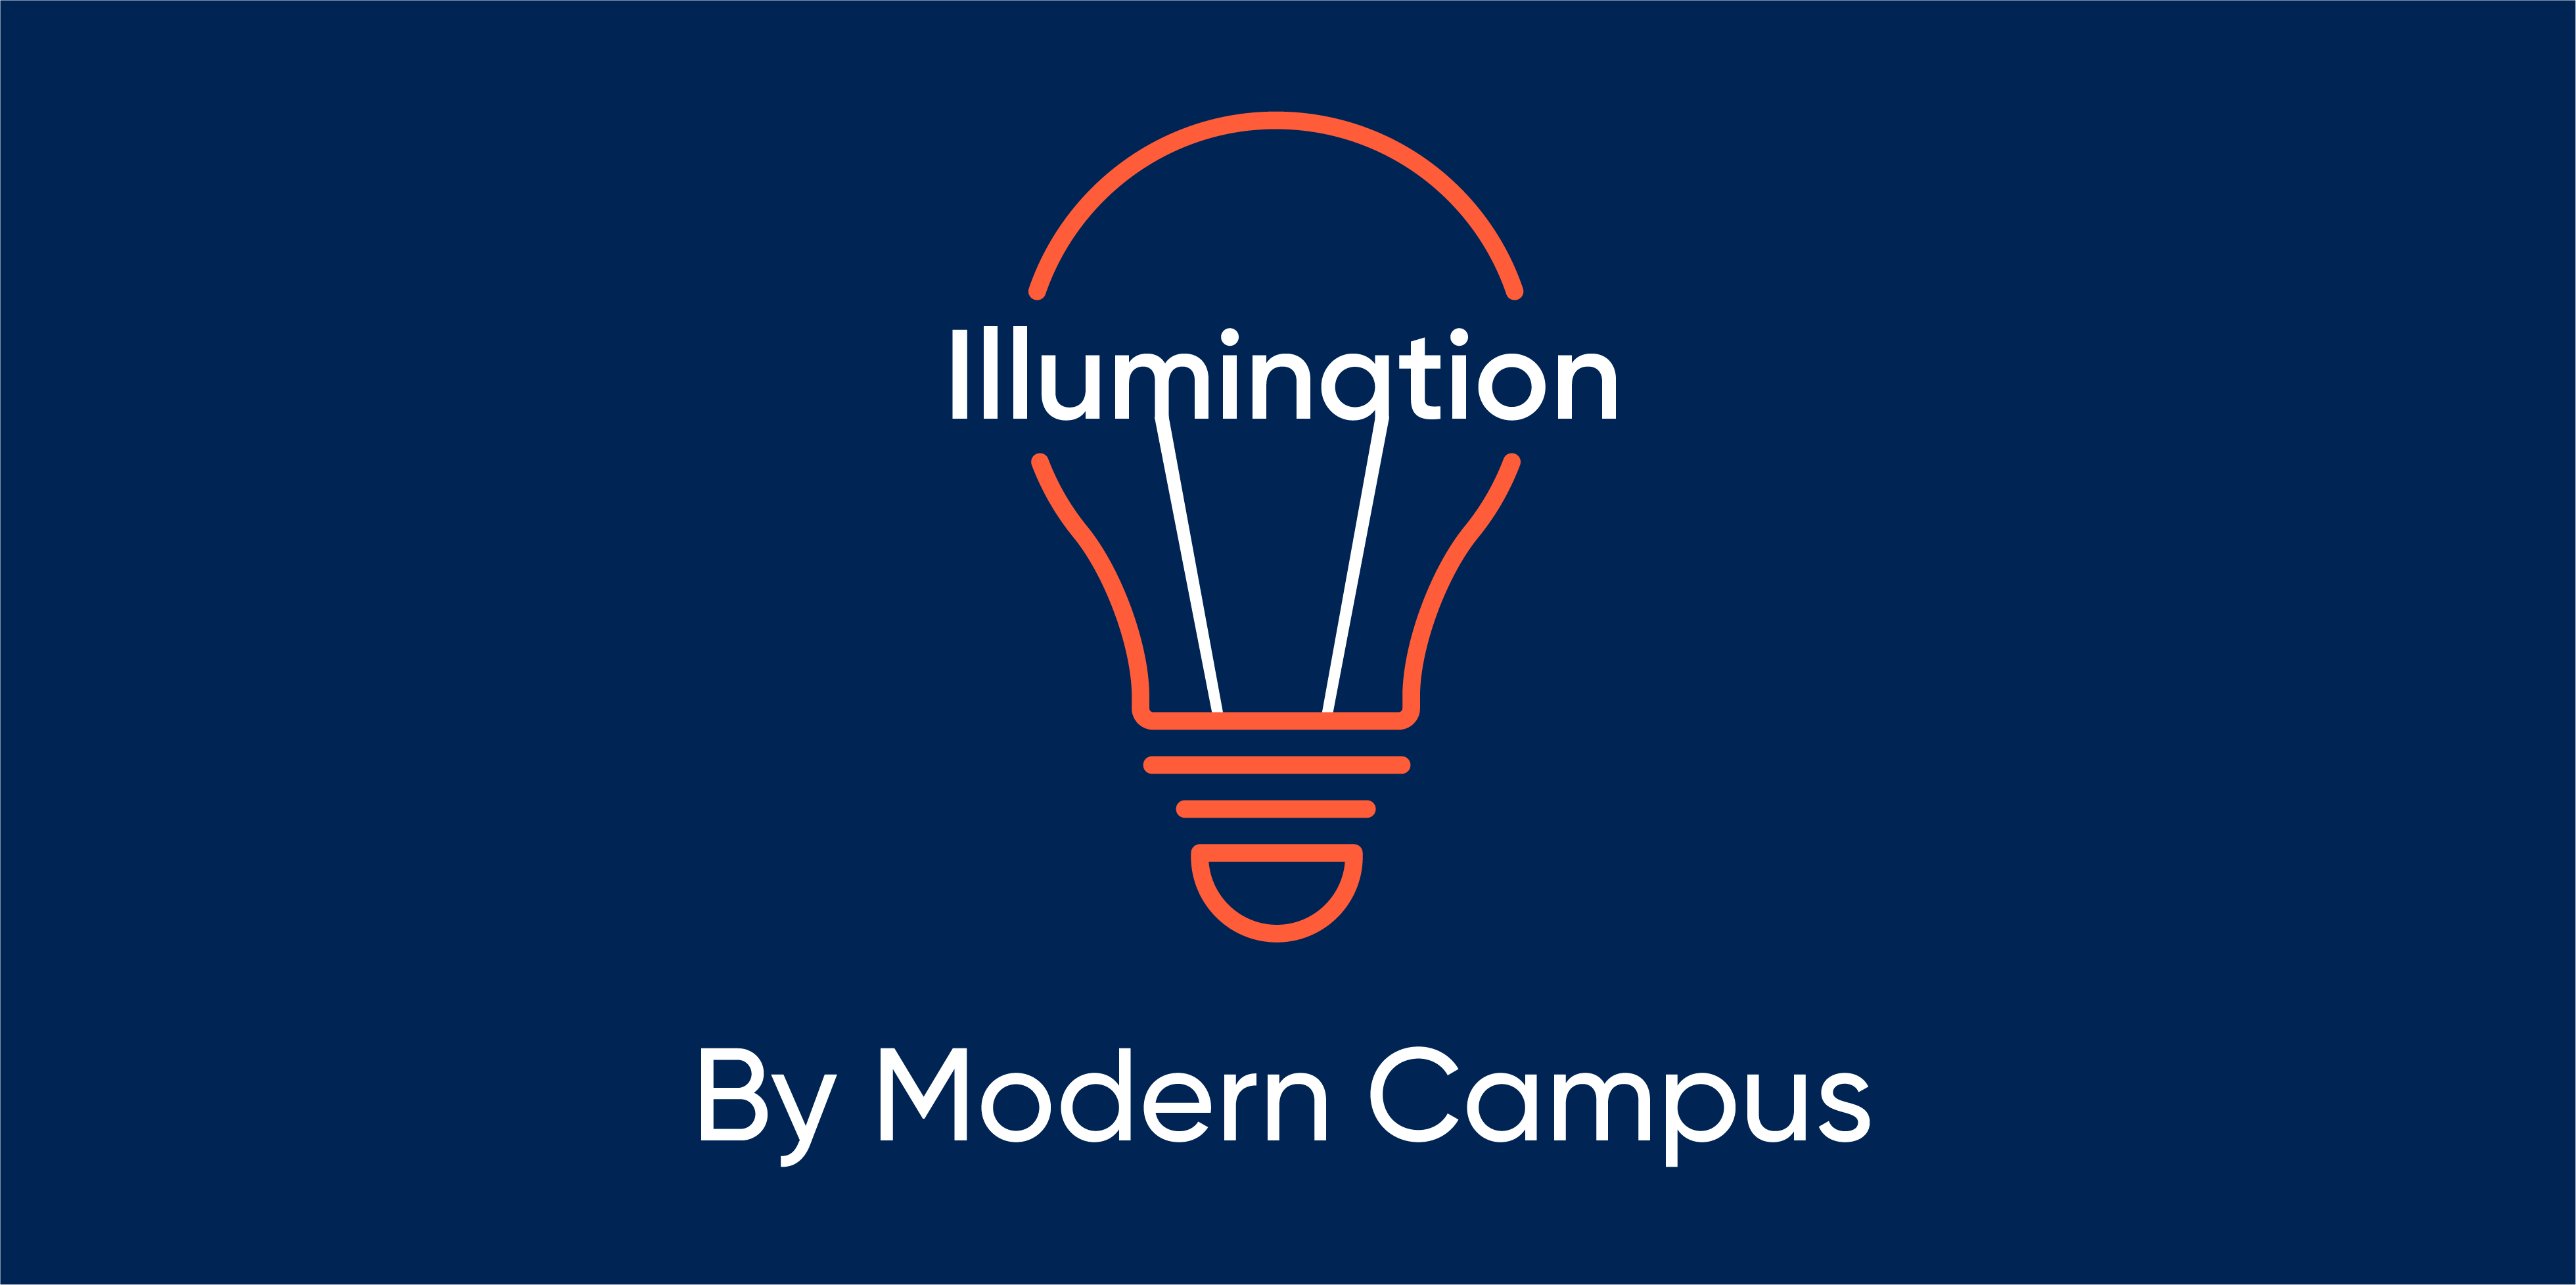 Episode 11: Illumination by Modern Campus